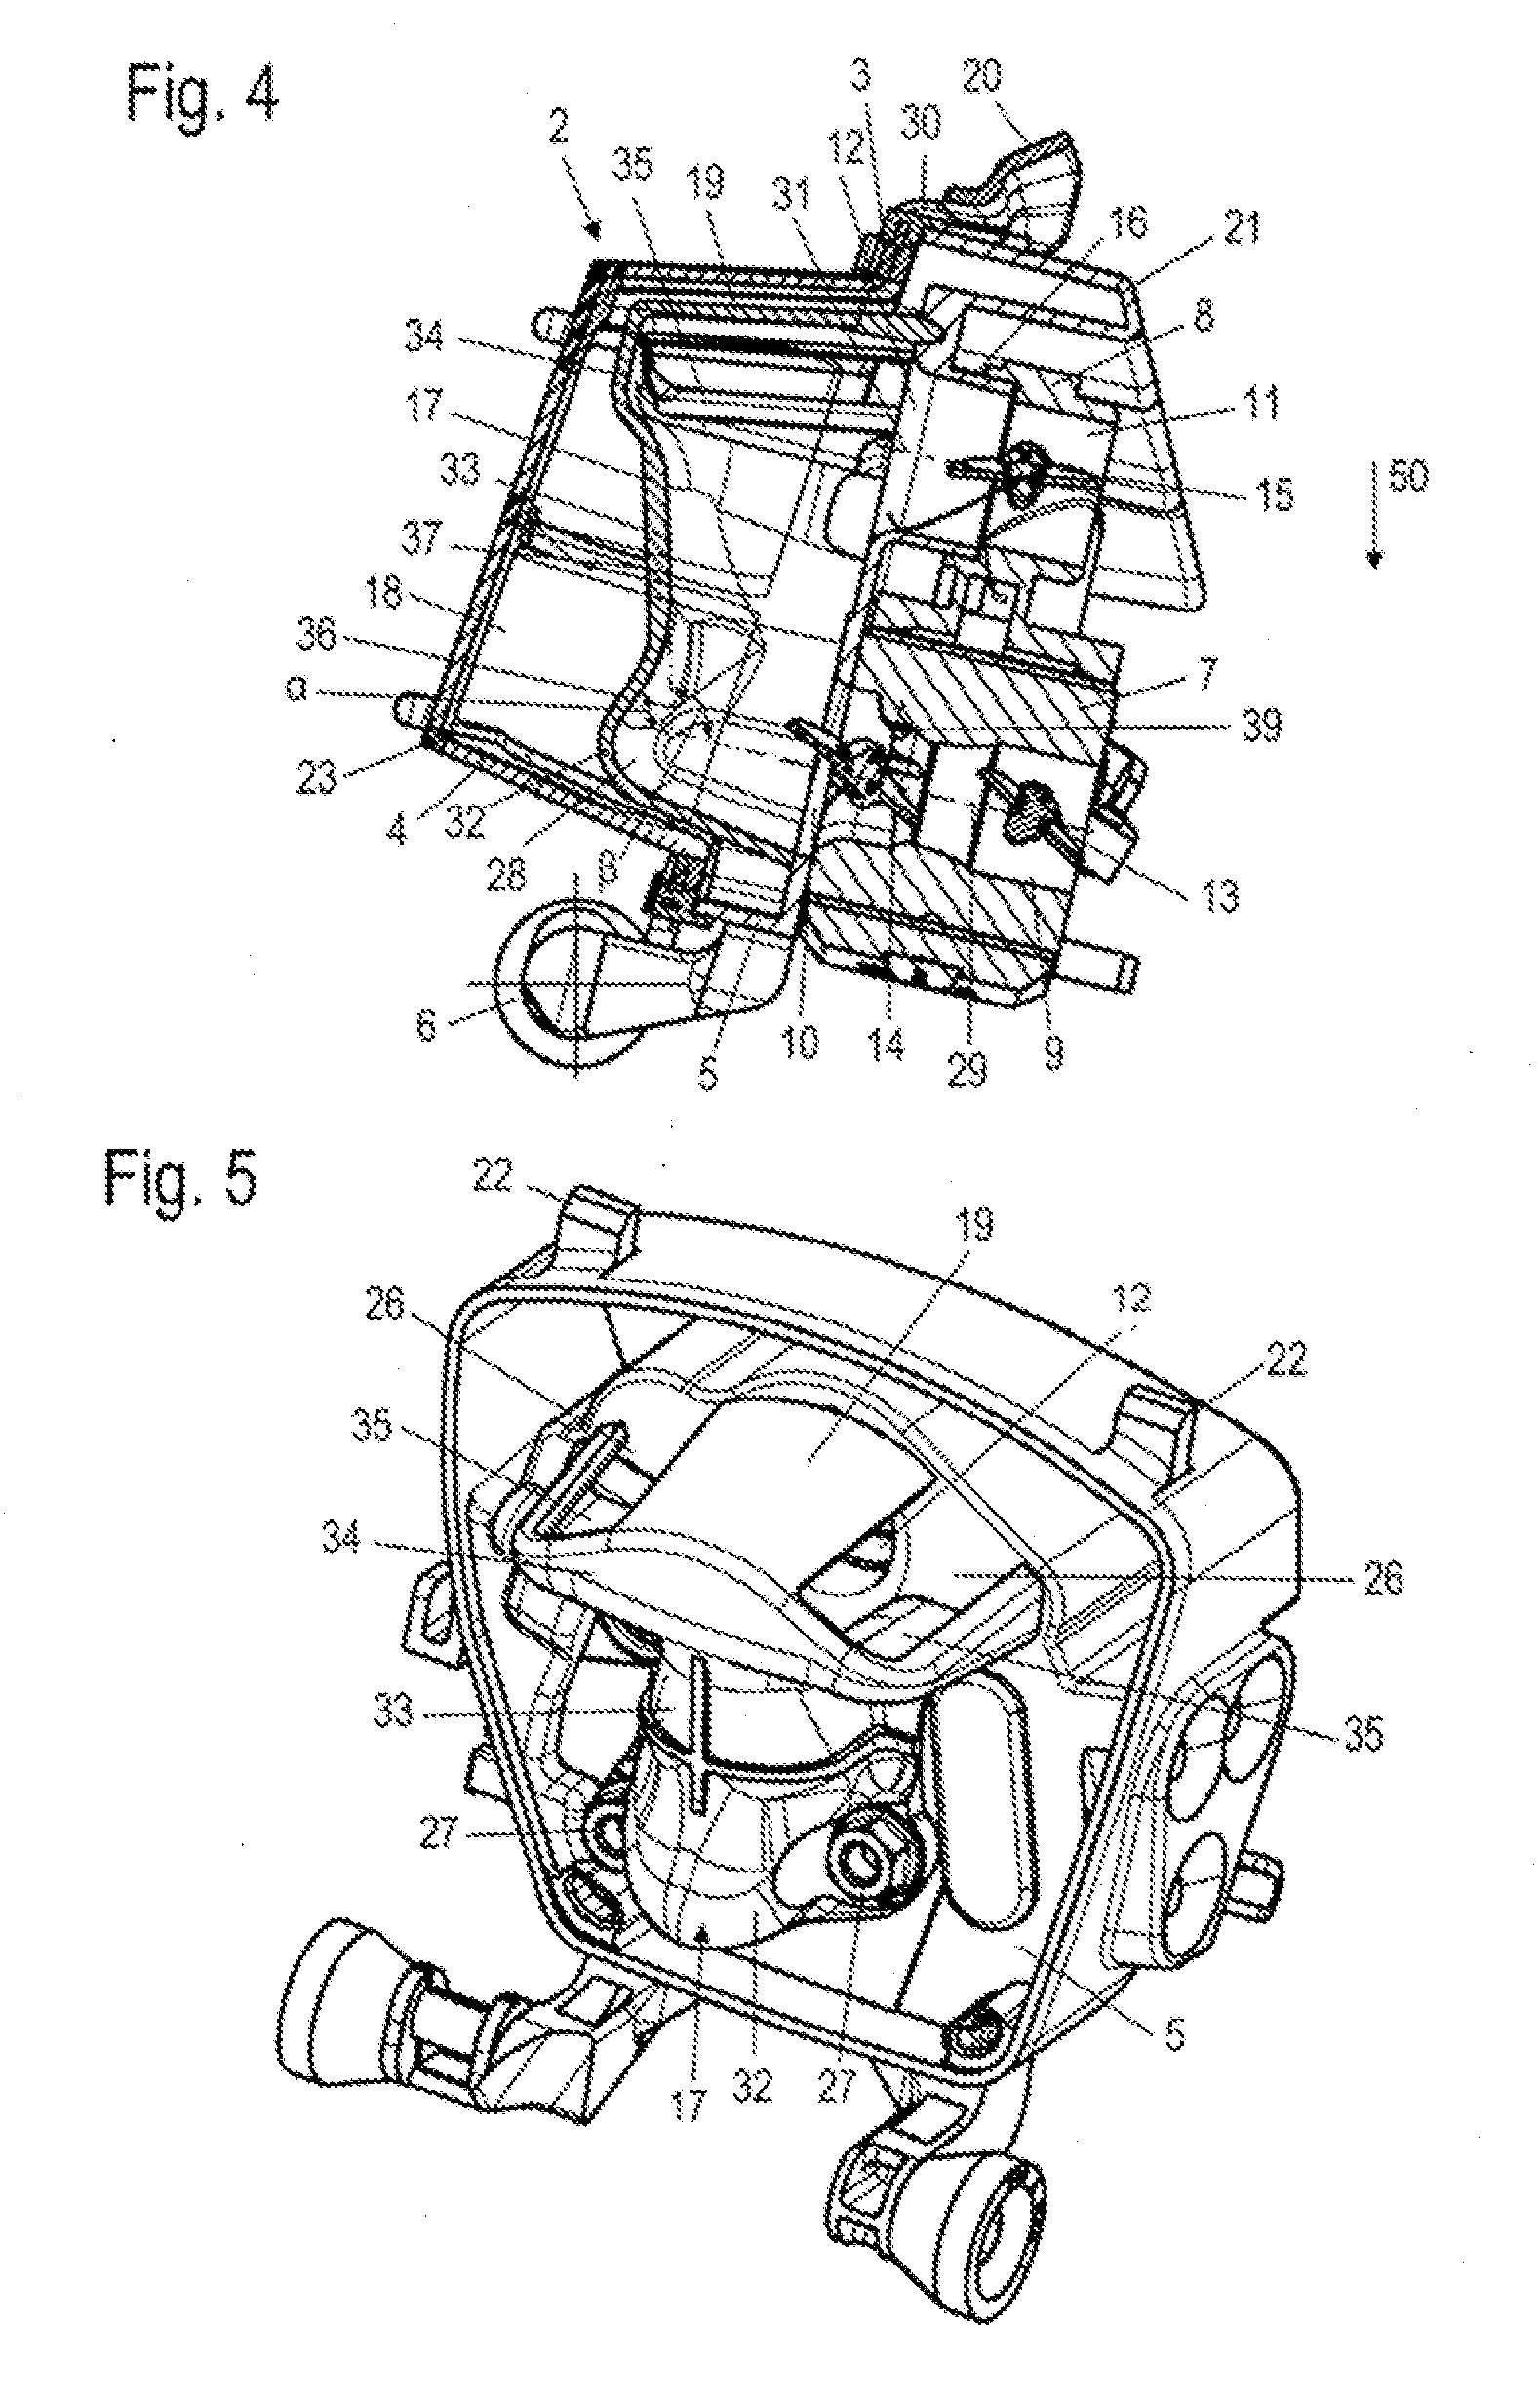 Air filter arrangement for an internal combustion engine